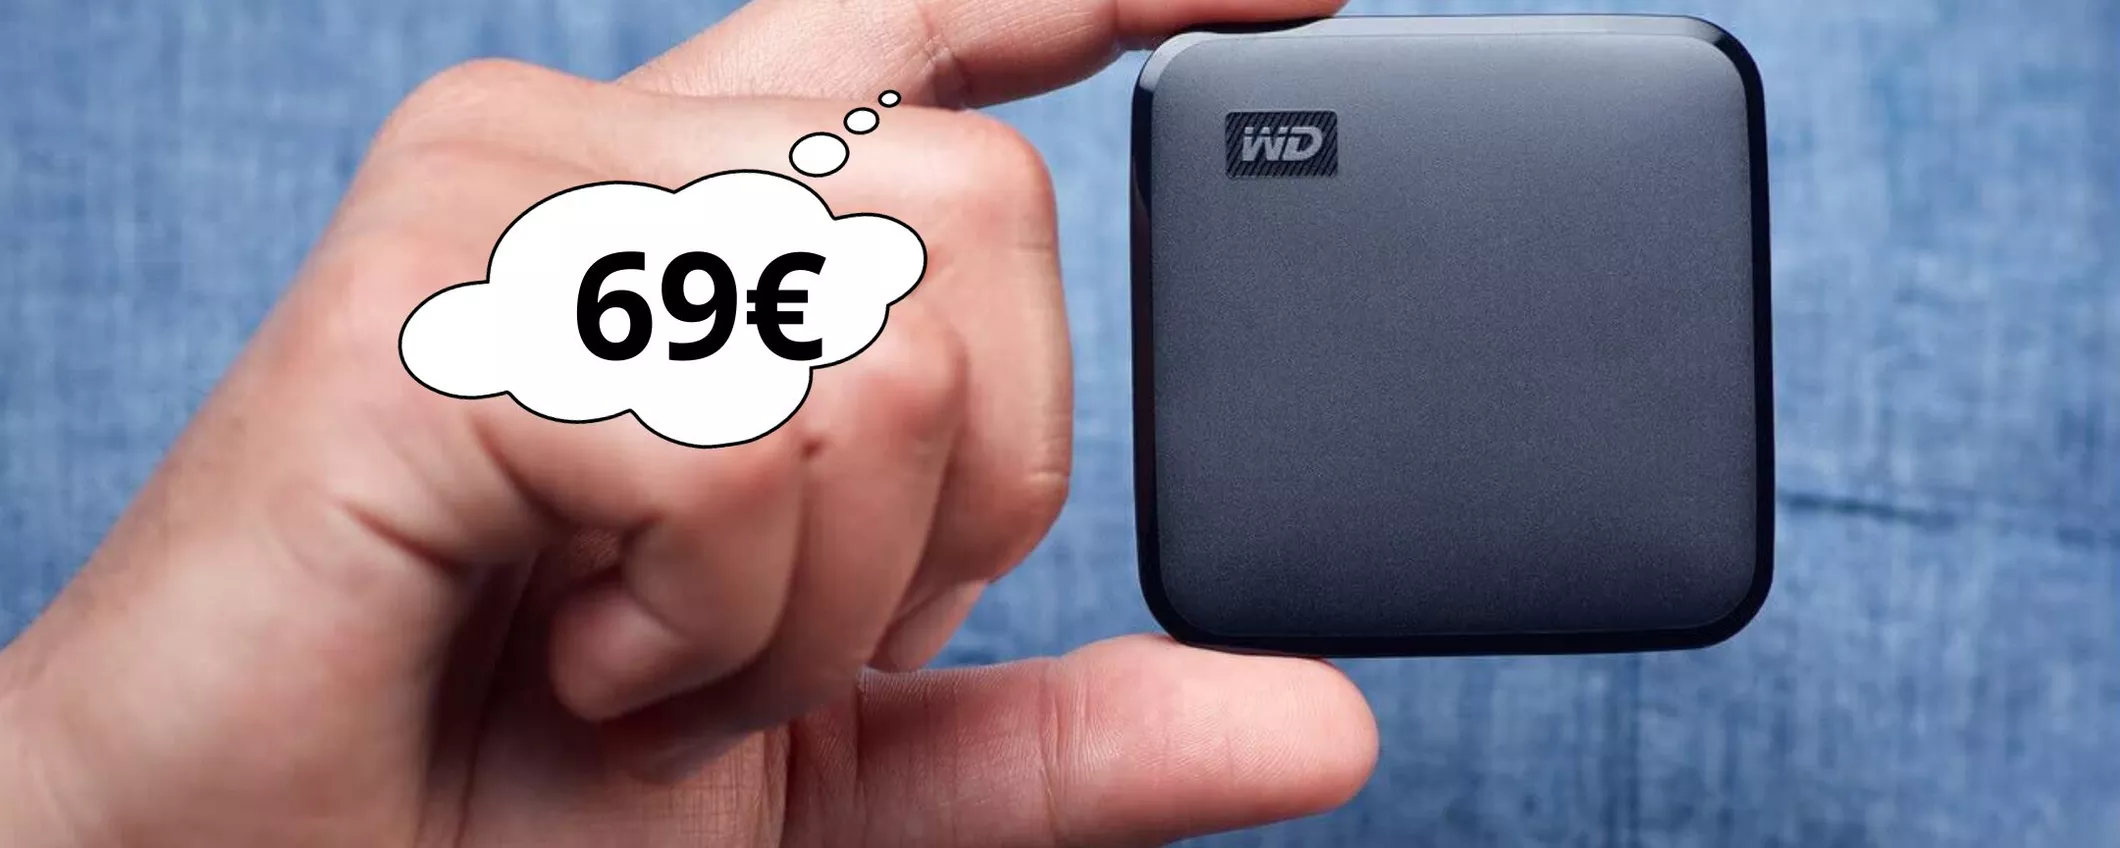 Con questa SSD Western digital da 1 TB velocizzi il tuo Pc e porti i dati dove vuoi: ORA risparmi 14 euro!